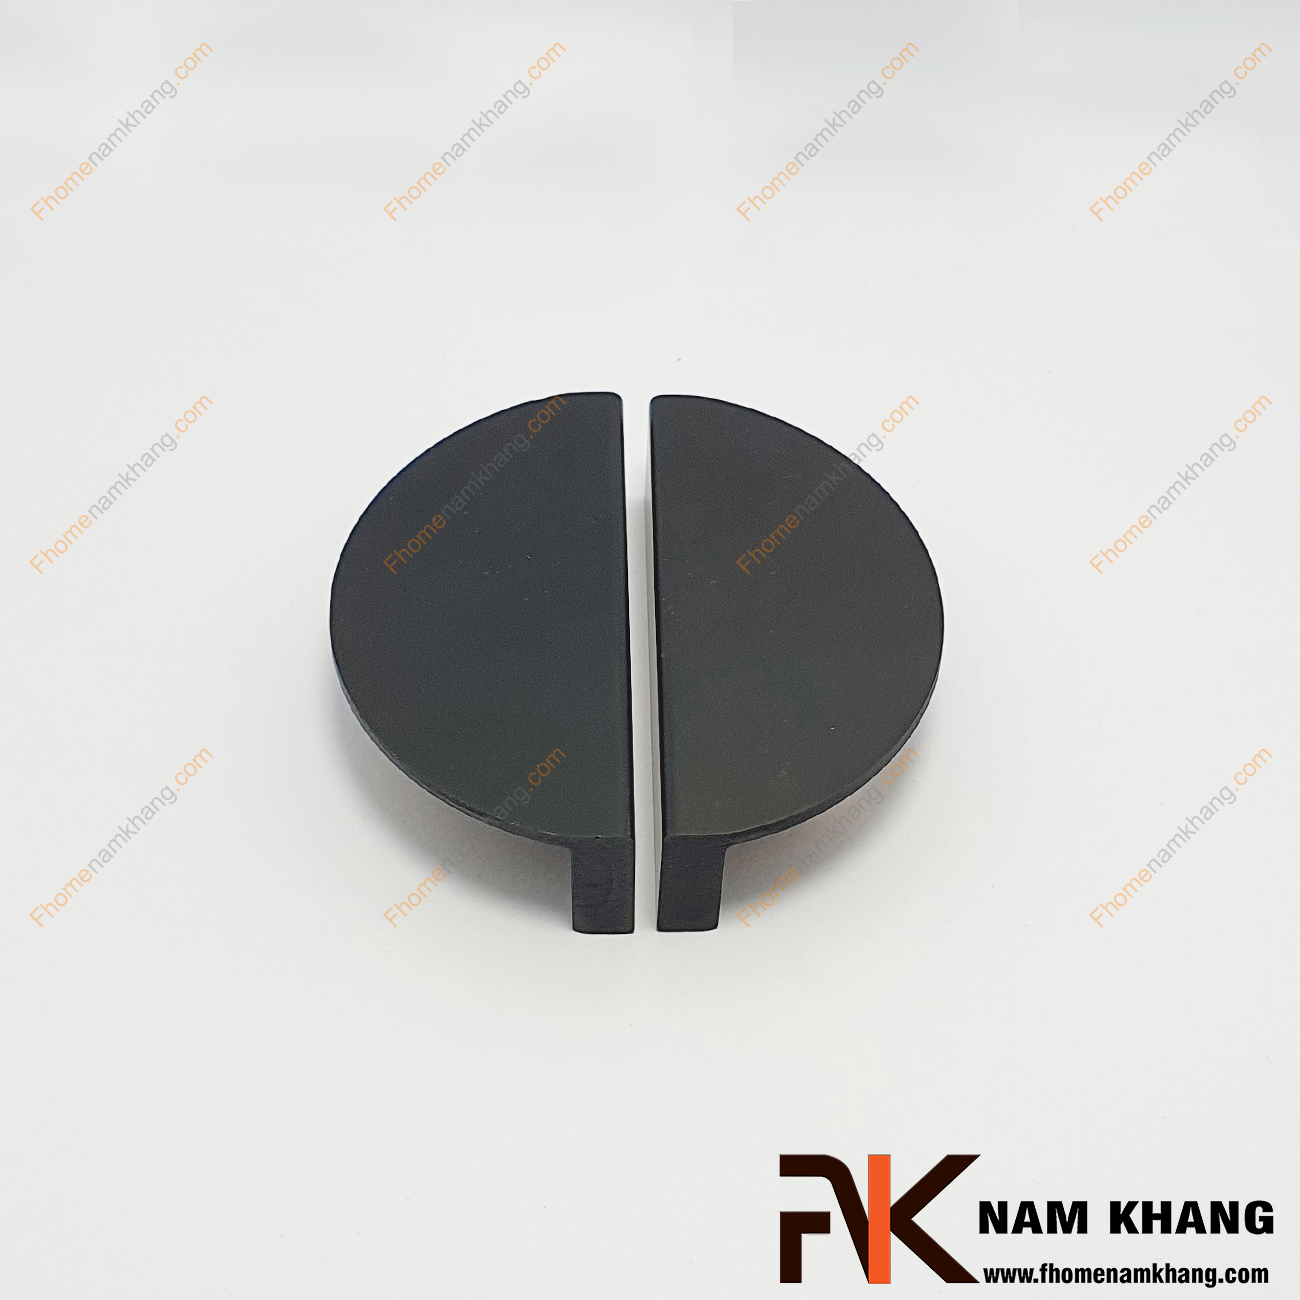 Tay nắm tủ dạng bán nguyệt dạng trơn màu đen NK286BN-64D là dạng tay nắm tủ bán nguyệt ghép đôi độc đáo. Sản phẩm có thiết kế cong góc vuông và có độ dày cho cảm nắm cầm kéo thoải mái. 